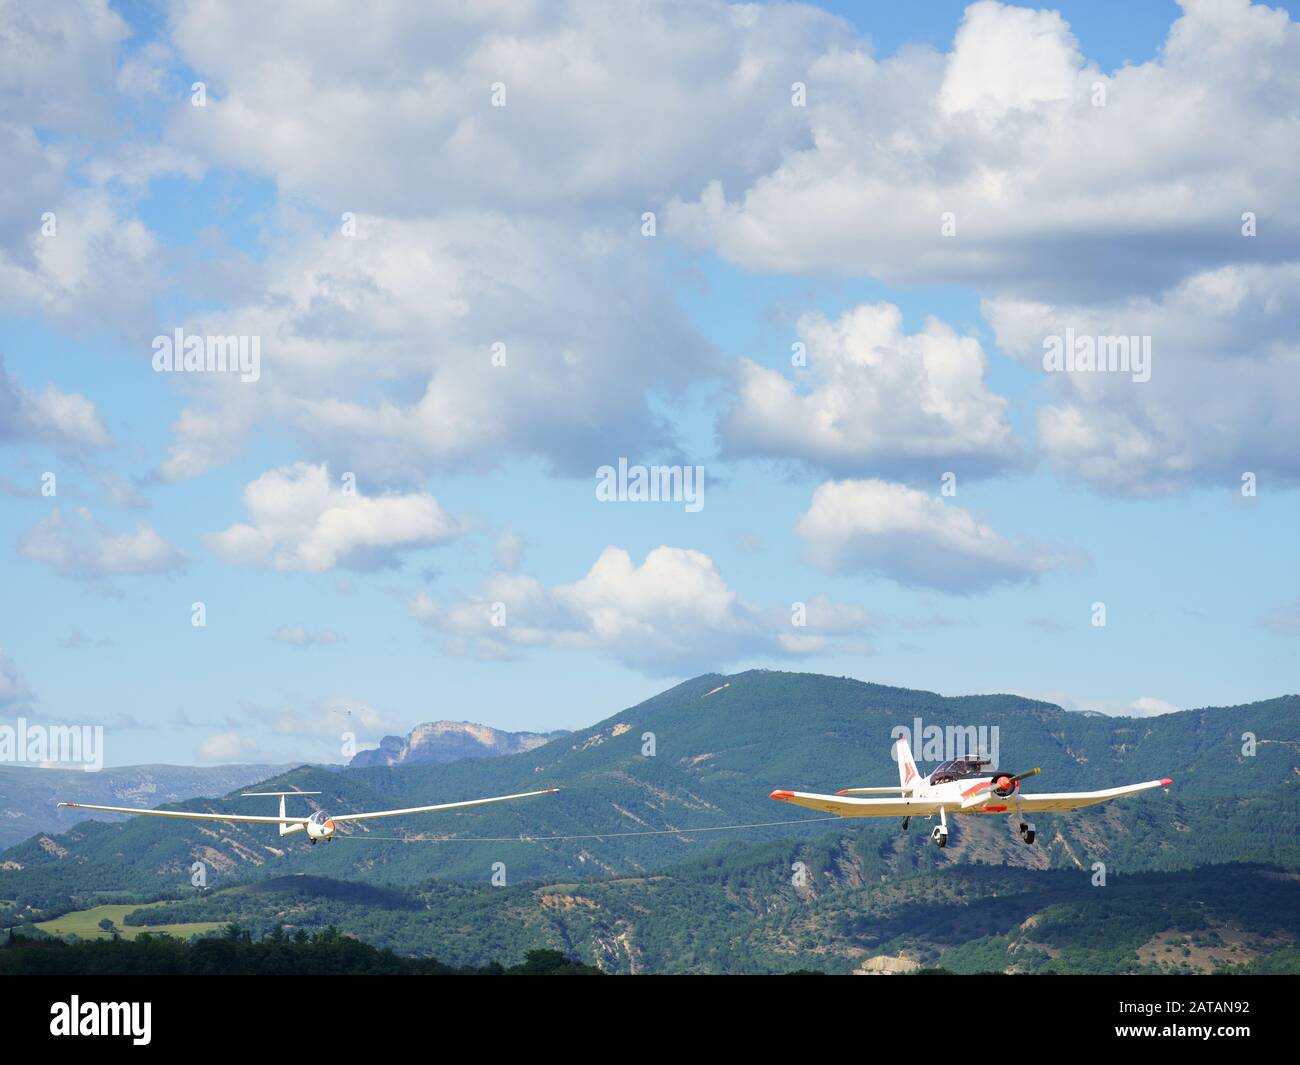 Segelflugzeug, das von einem einmotorigen Flugzeug belüftet wird. Flugplatz Château-Arnoux Saint-Auban, Alpes de Haute-Provence, Frankreich. Stockfoto